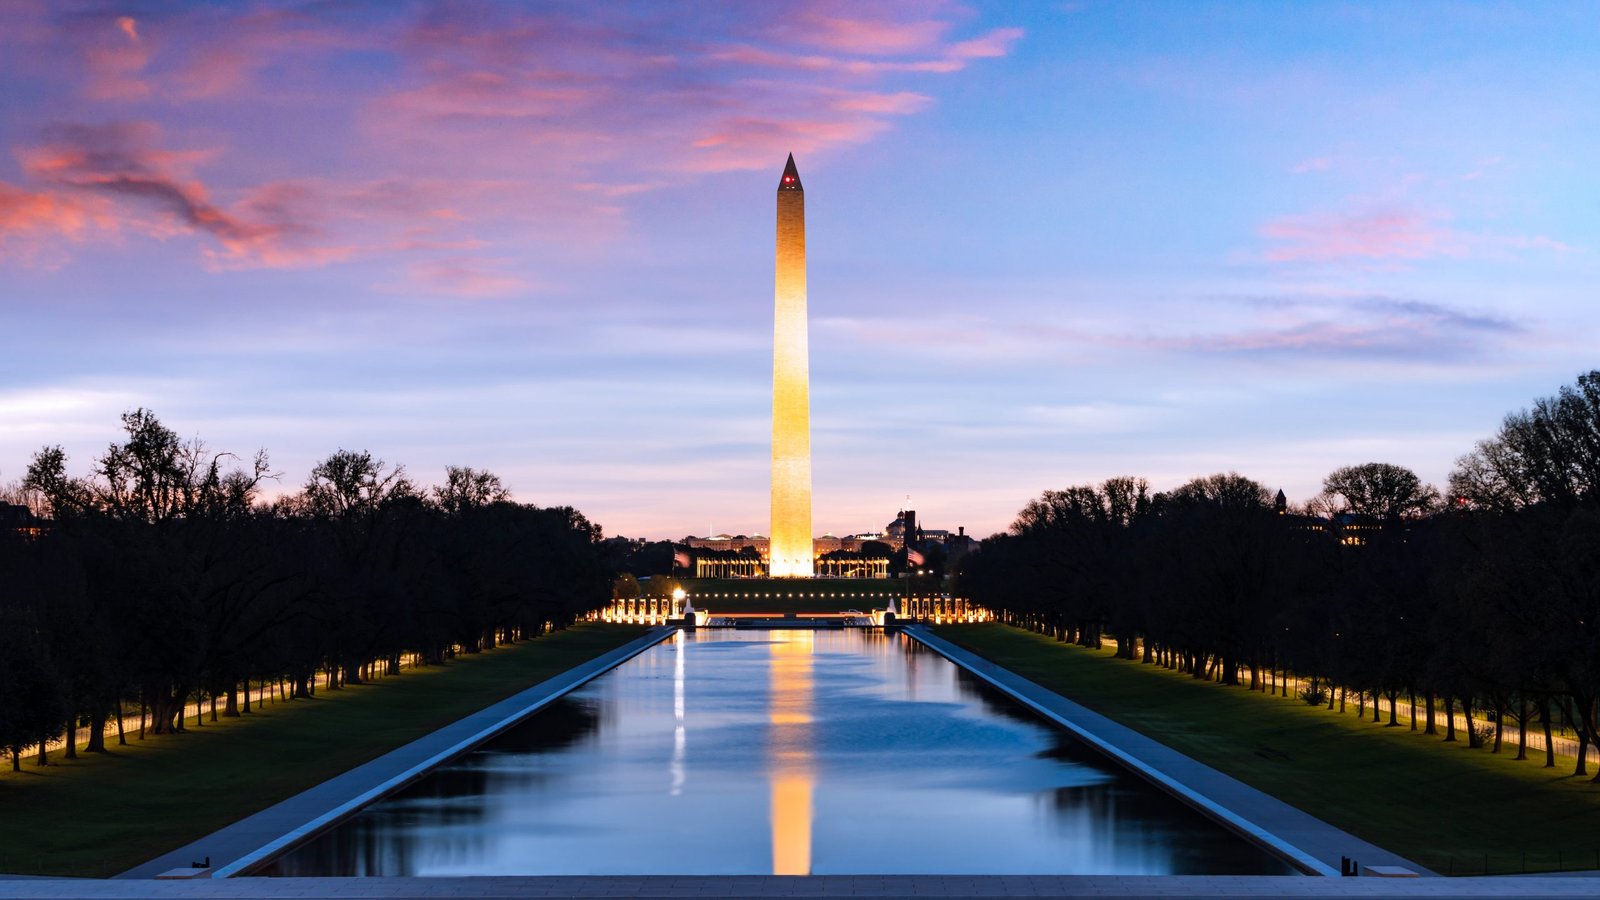 The-Washington-Monument